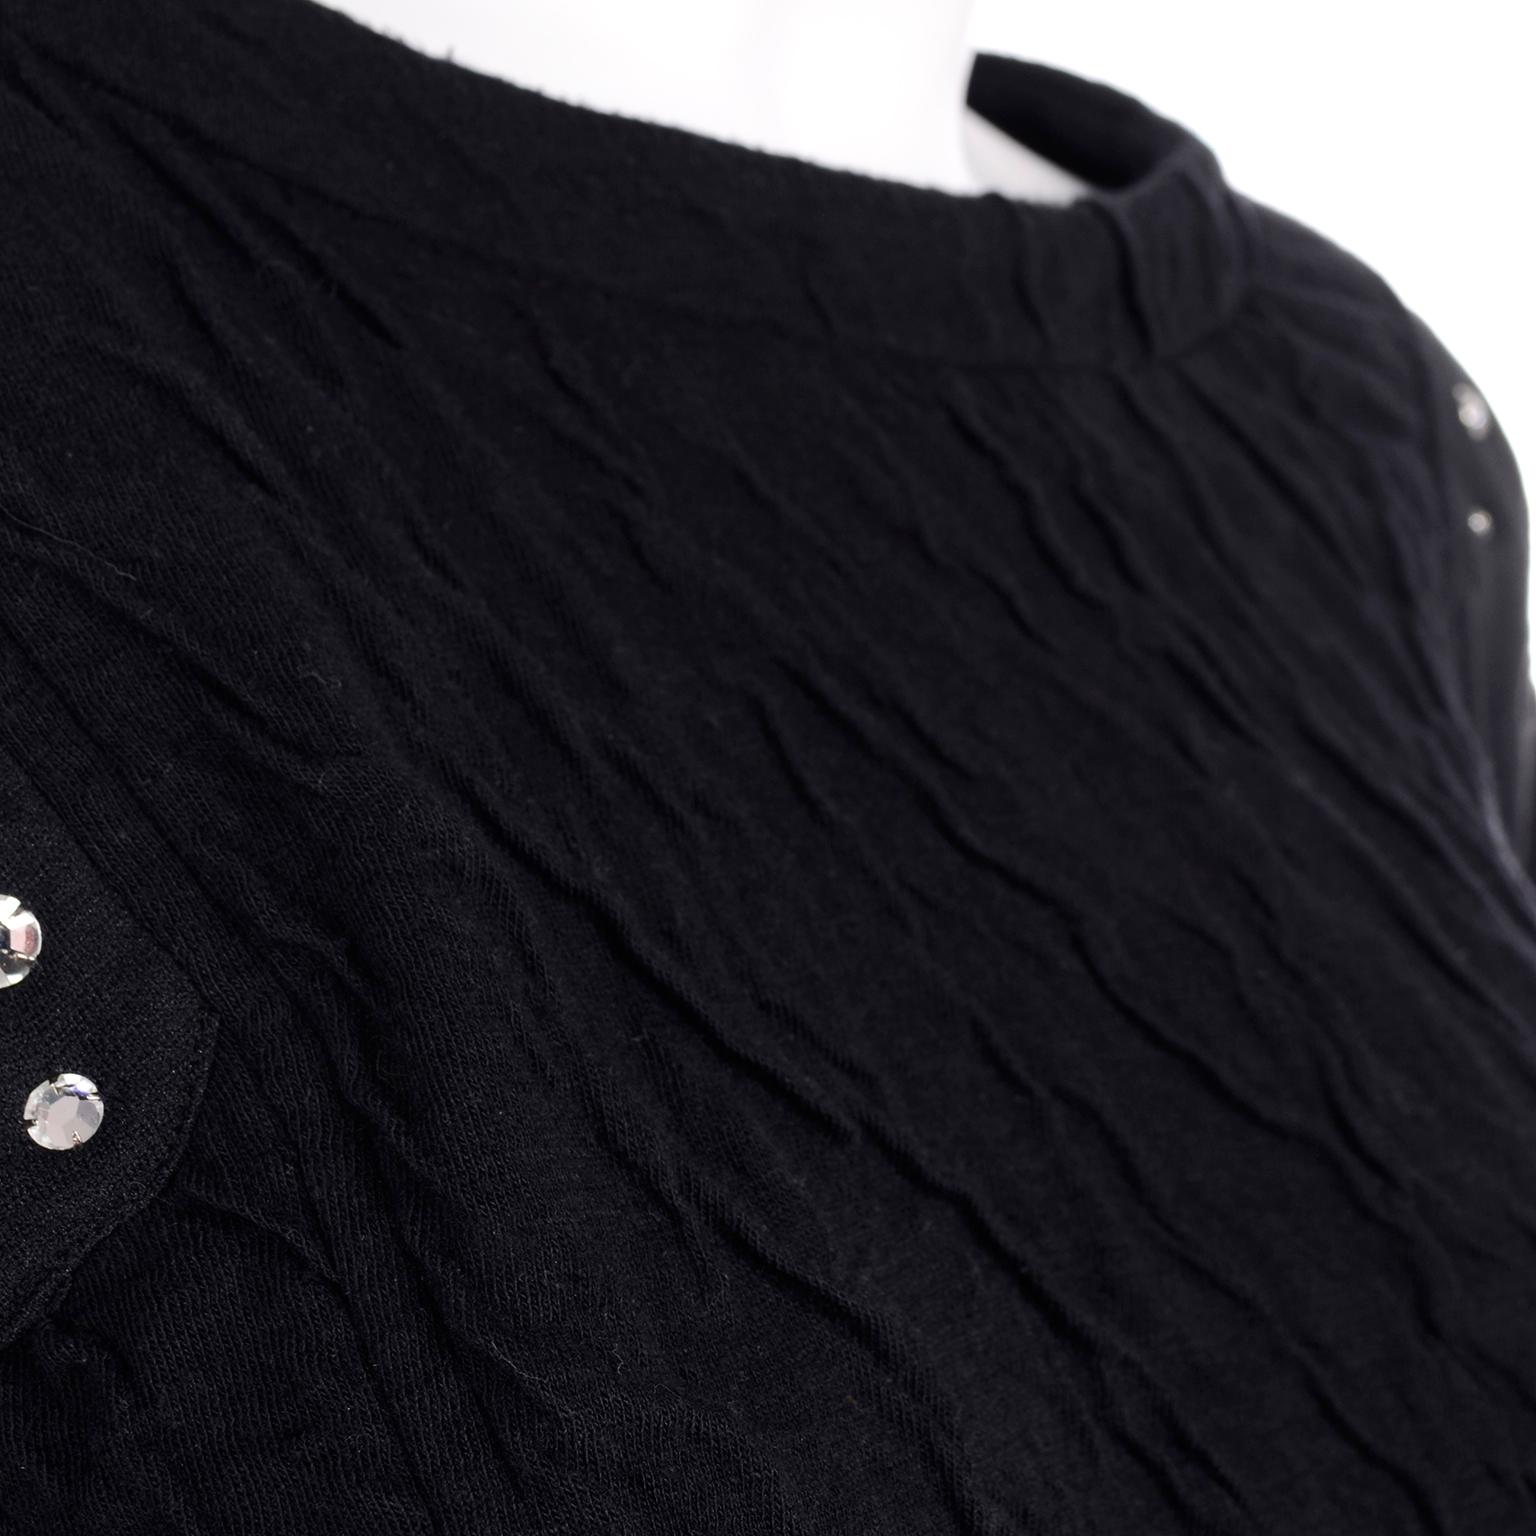 Vintage Black Crinkle 1980s Jumpsuit With Rhinestones & Dolman Sleeves 7